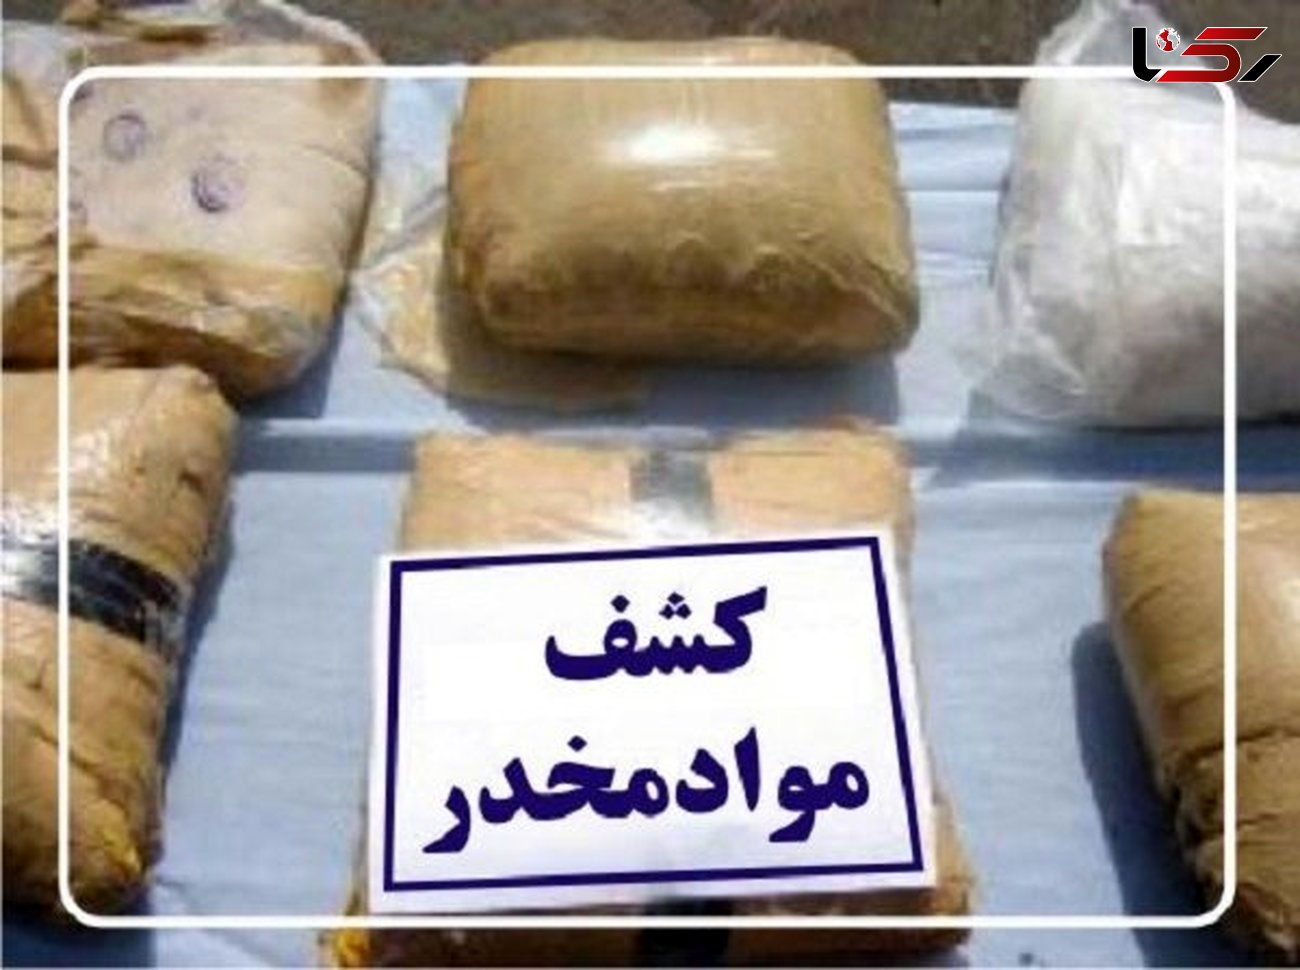 پژو 405 مشکوک حامل مواد افیونی بود / در شیراز توقیف شد